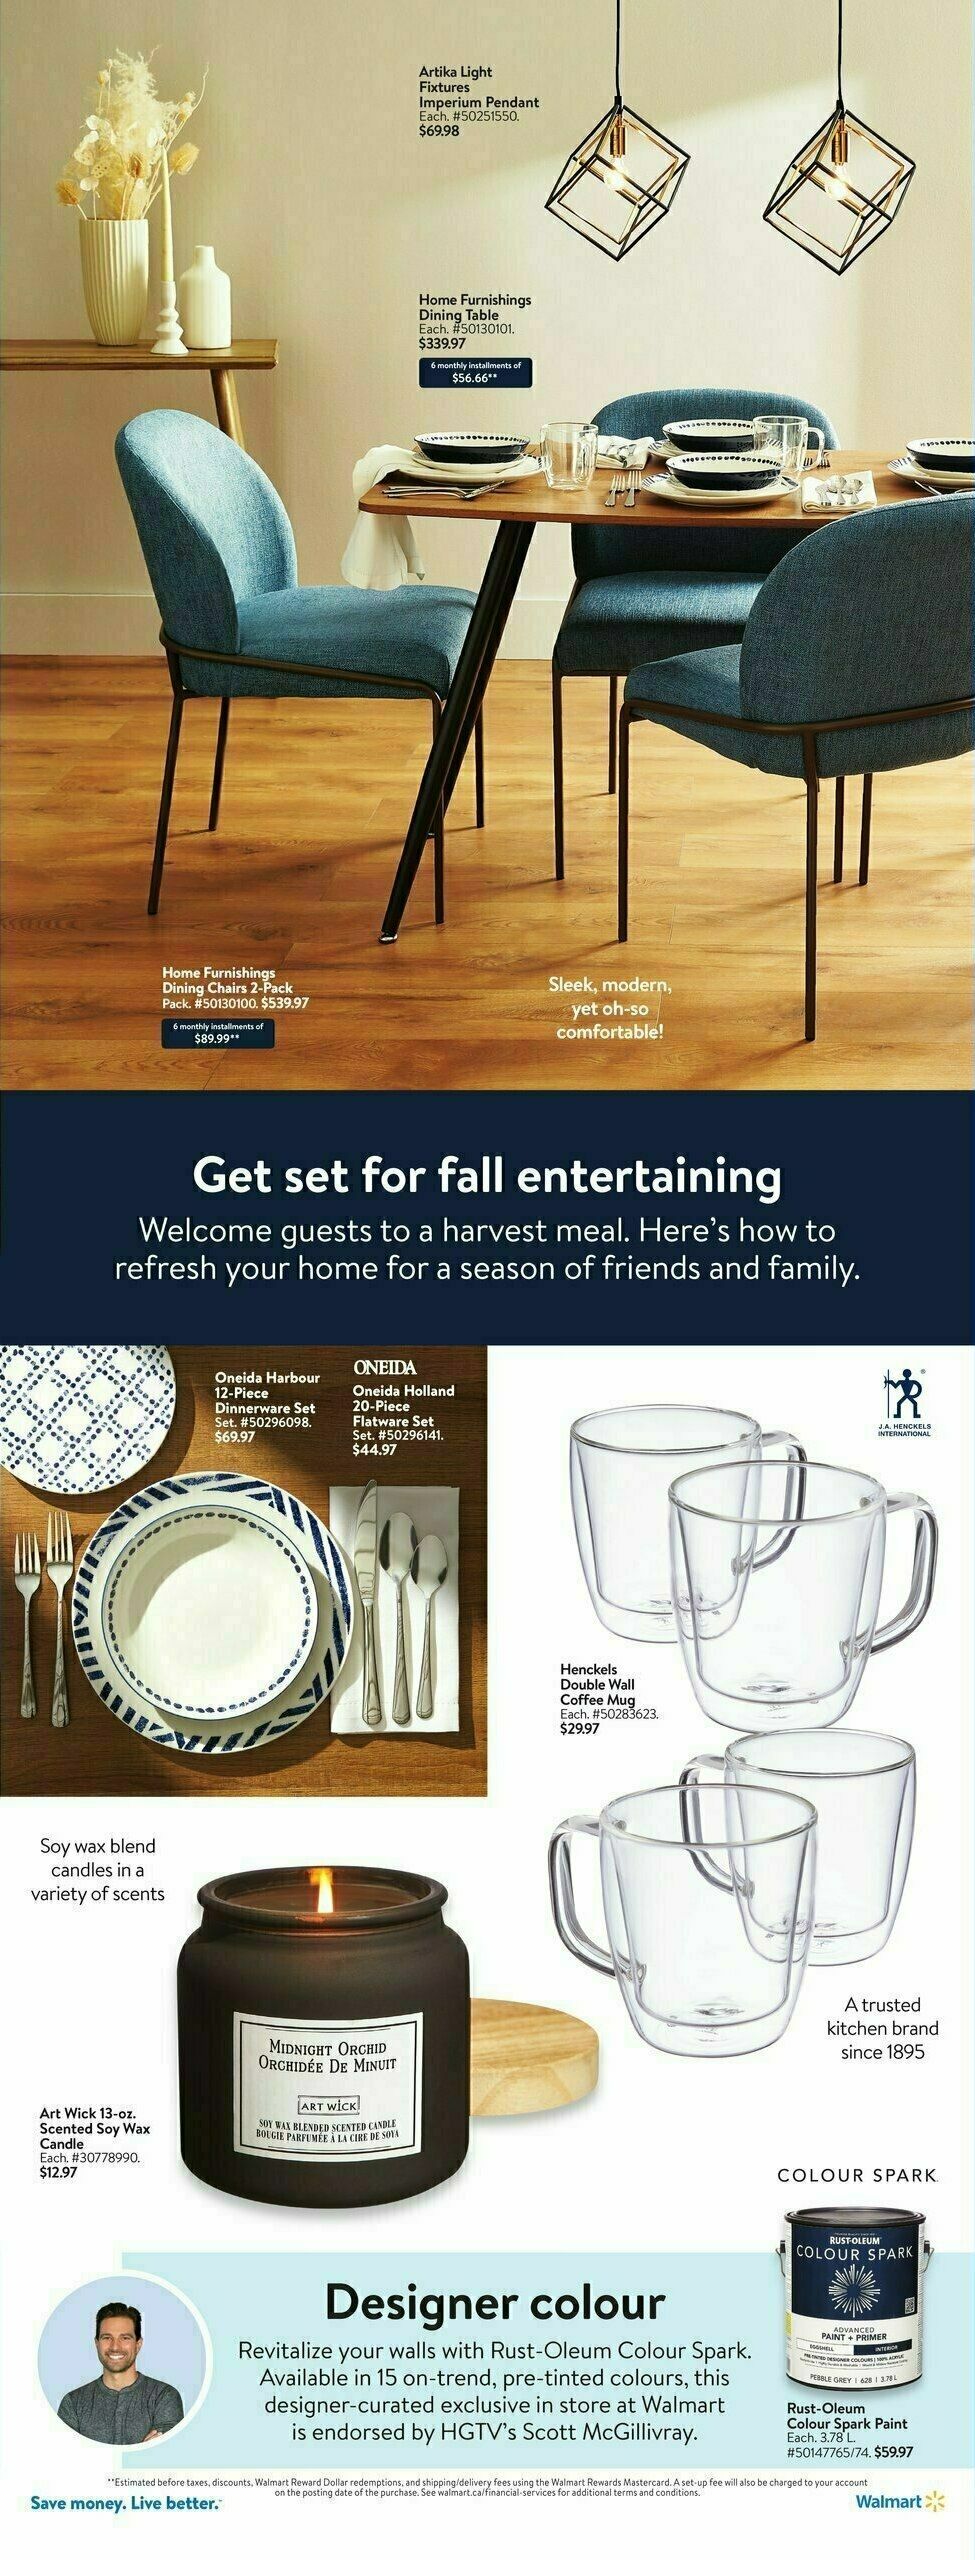 Walmart Spotlight Flyer from October 5